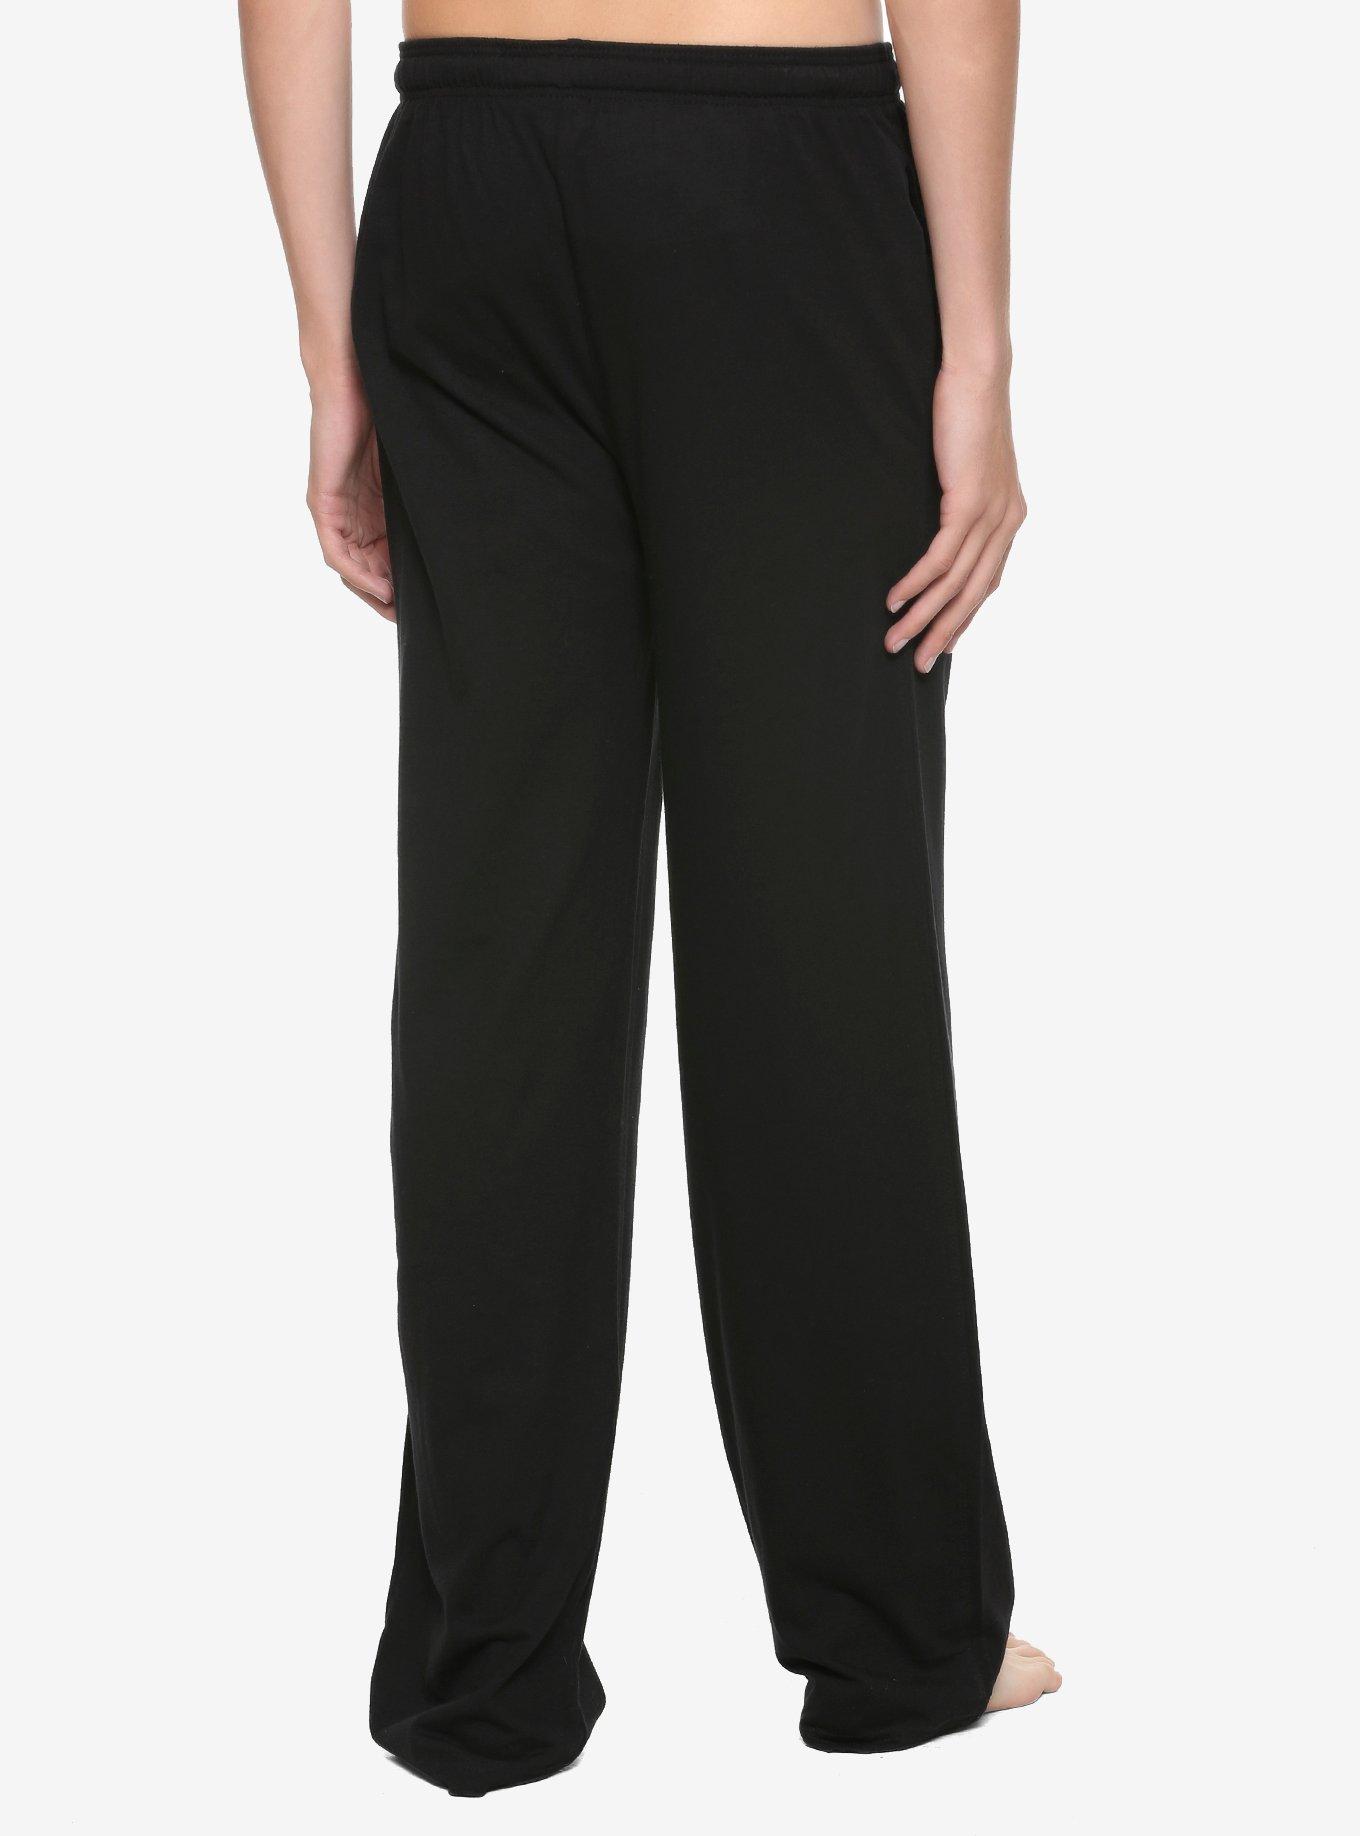 Beetlejuice Neon Head Pajama Pants, BLACK, alternate